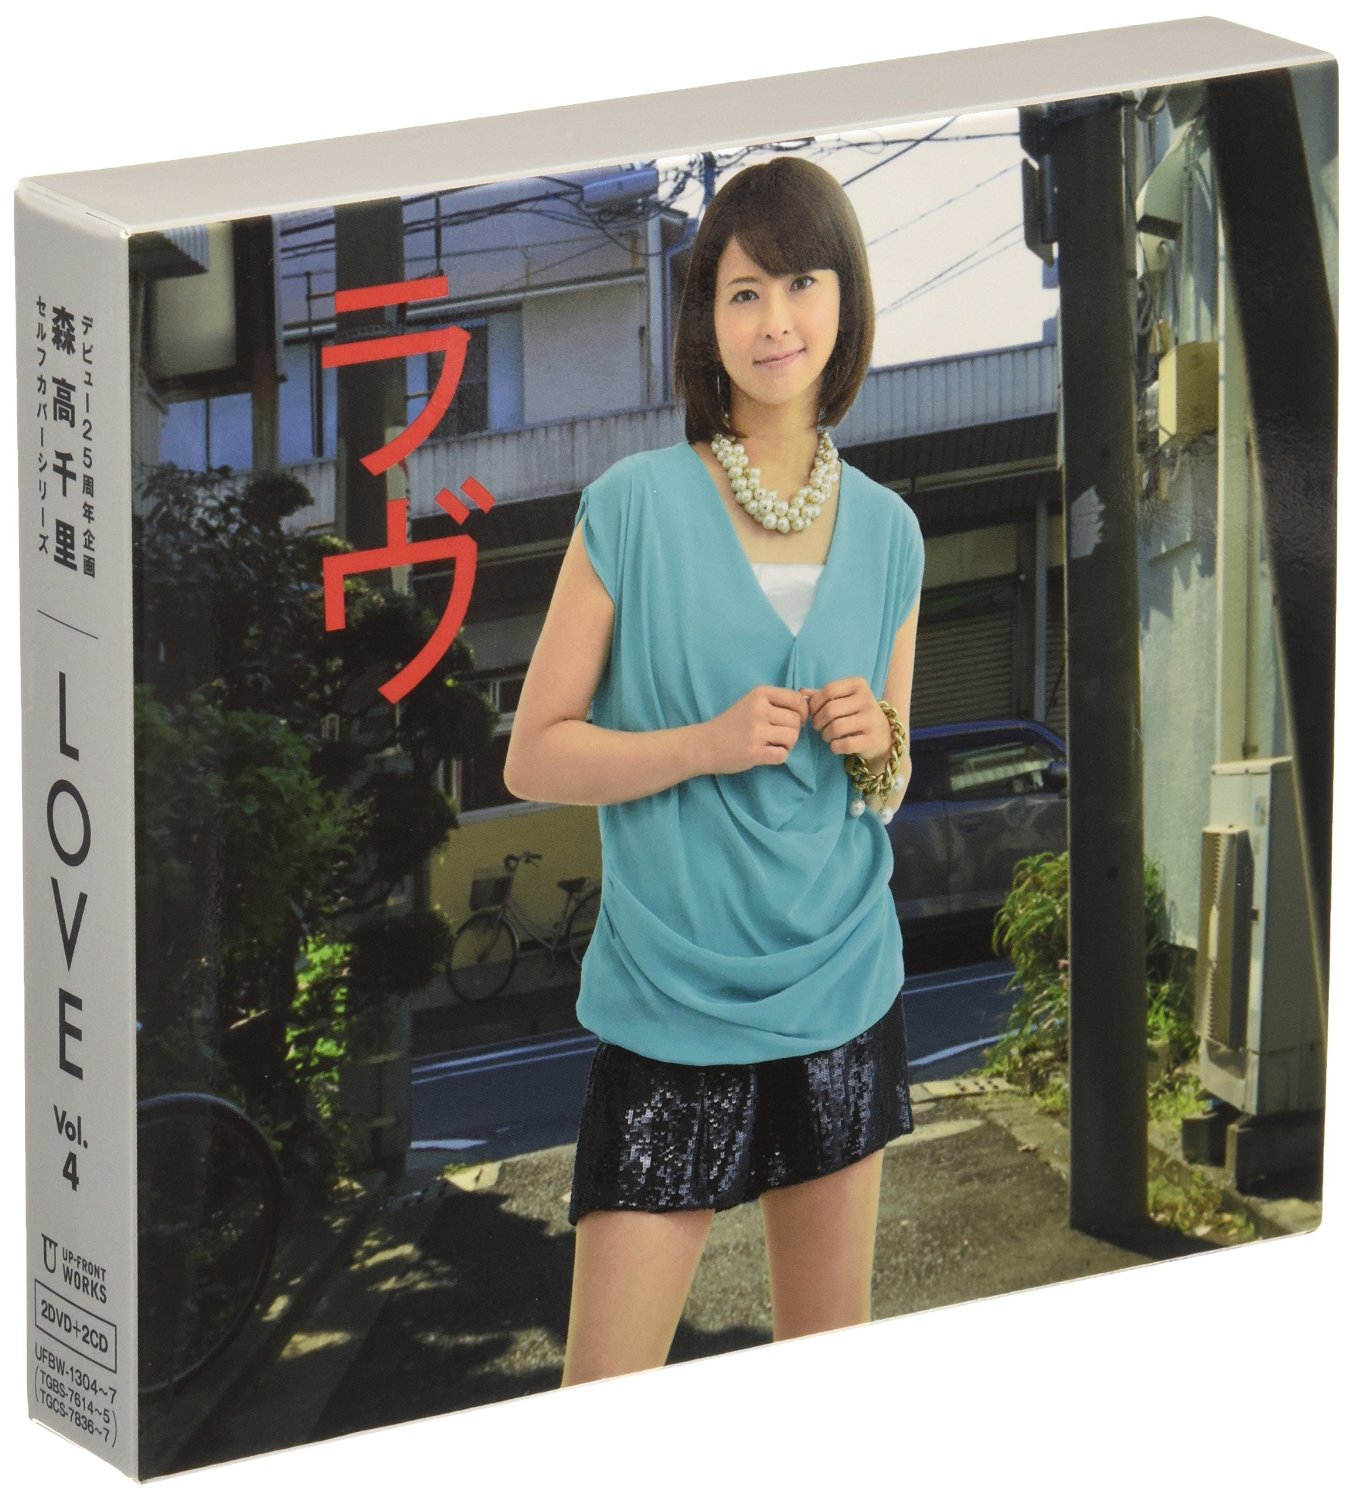 森高千里 LOVE Vol.11 SPECIAL DVD - DVD/ブルーレイ